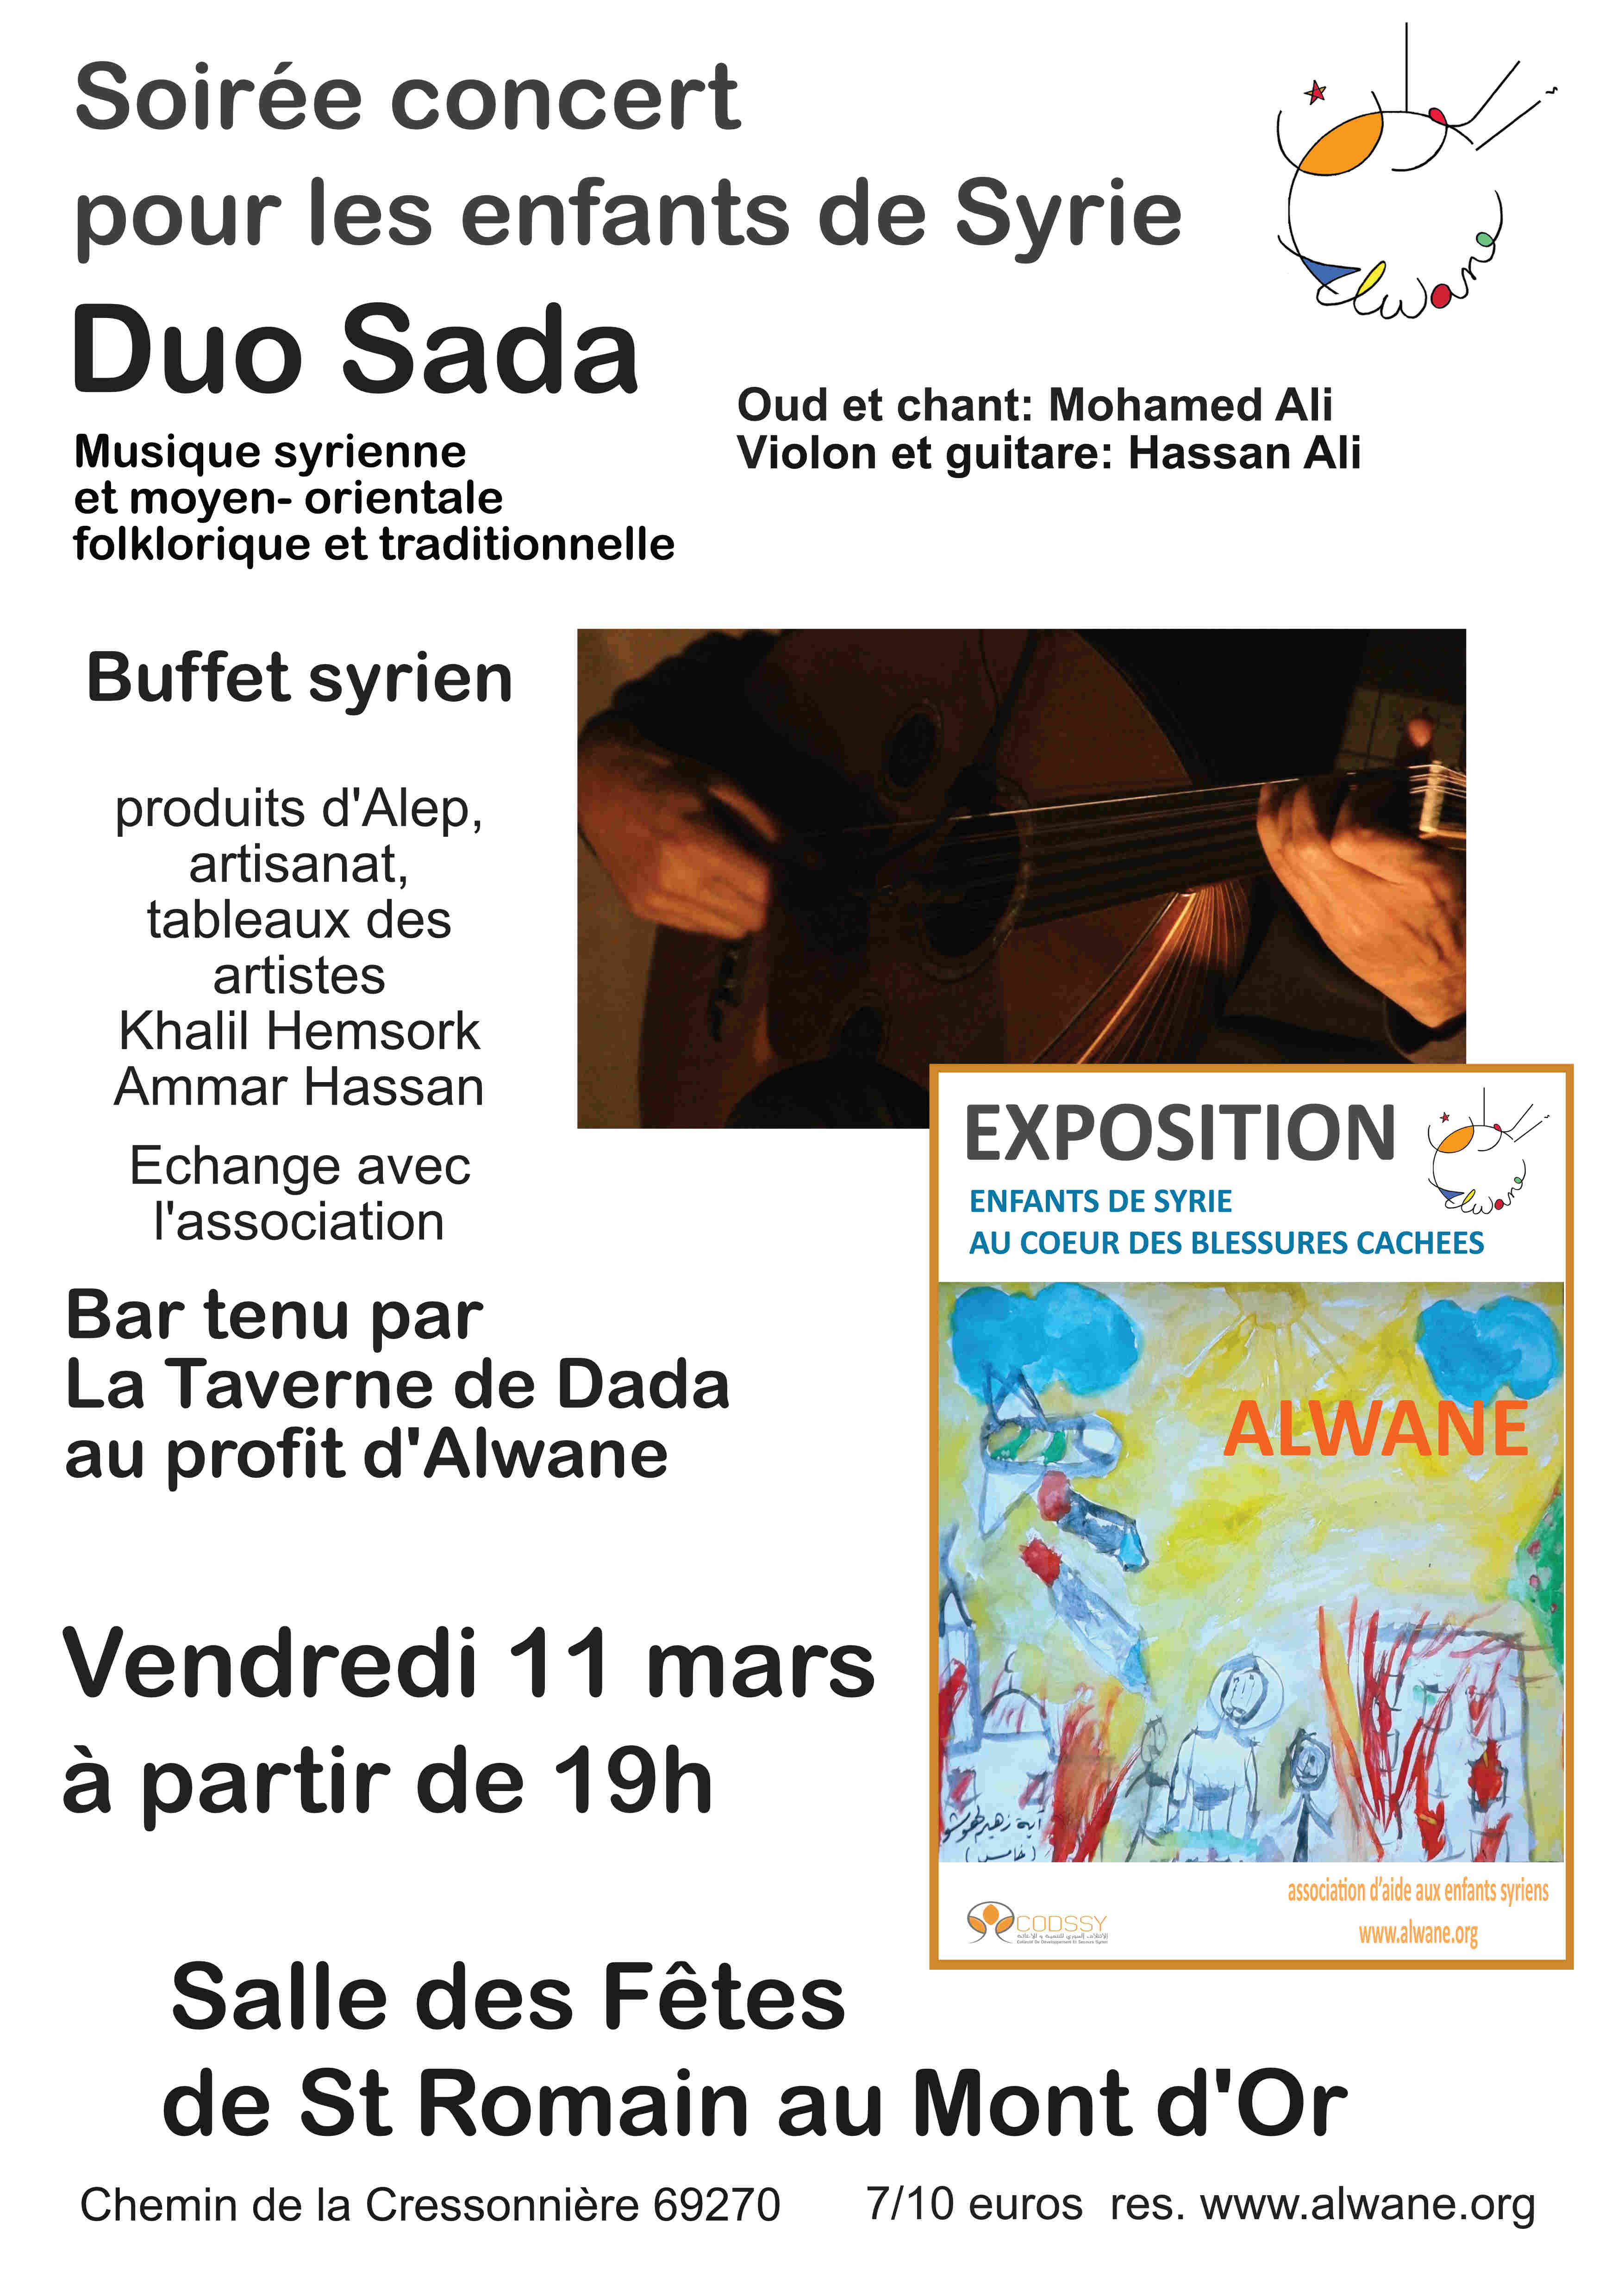 Soirée concert Duo Sada, au profit des enfants de Syrie